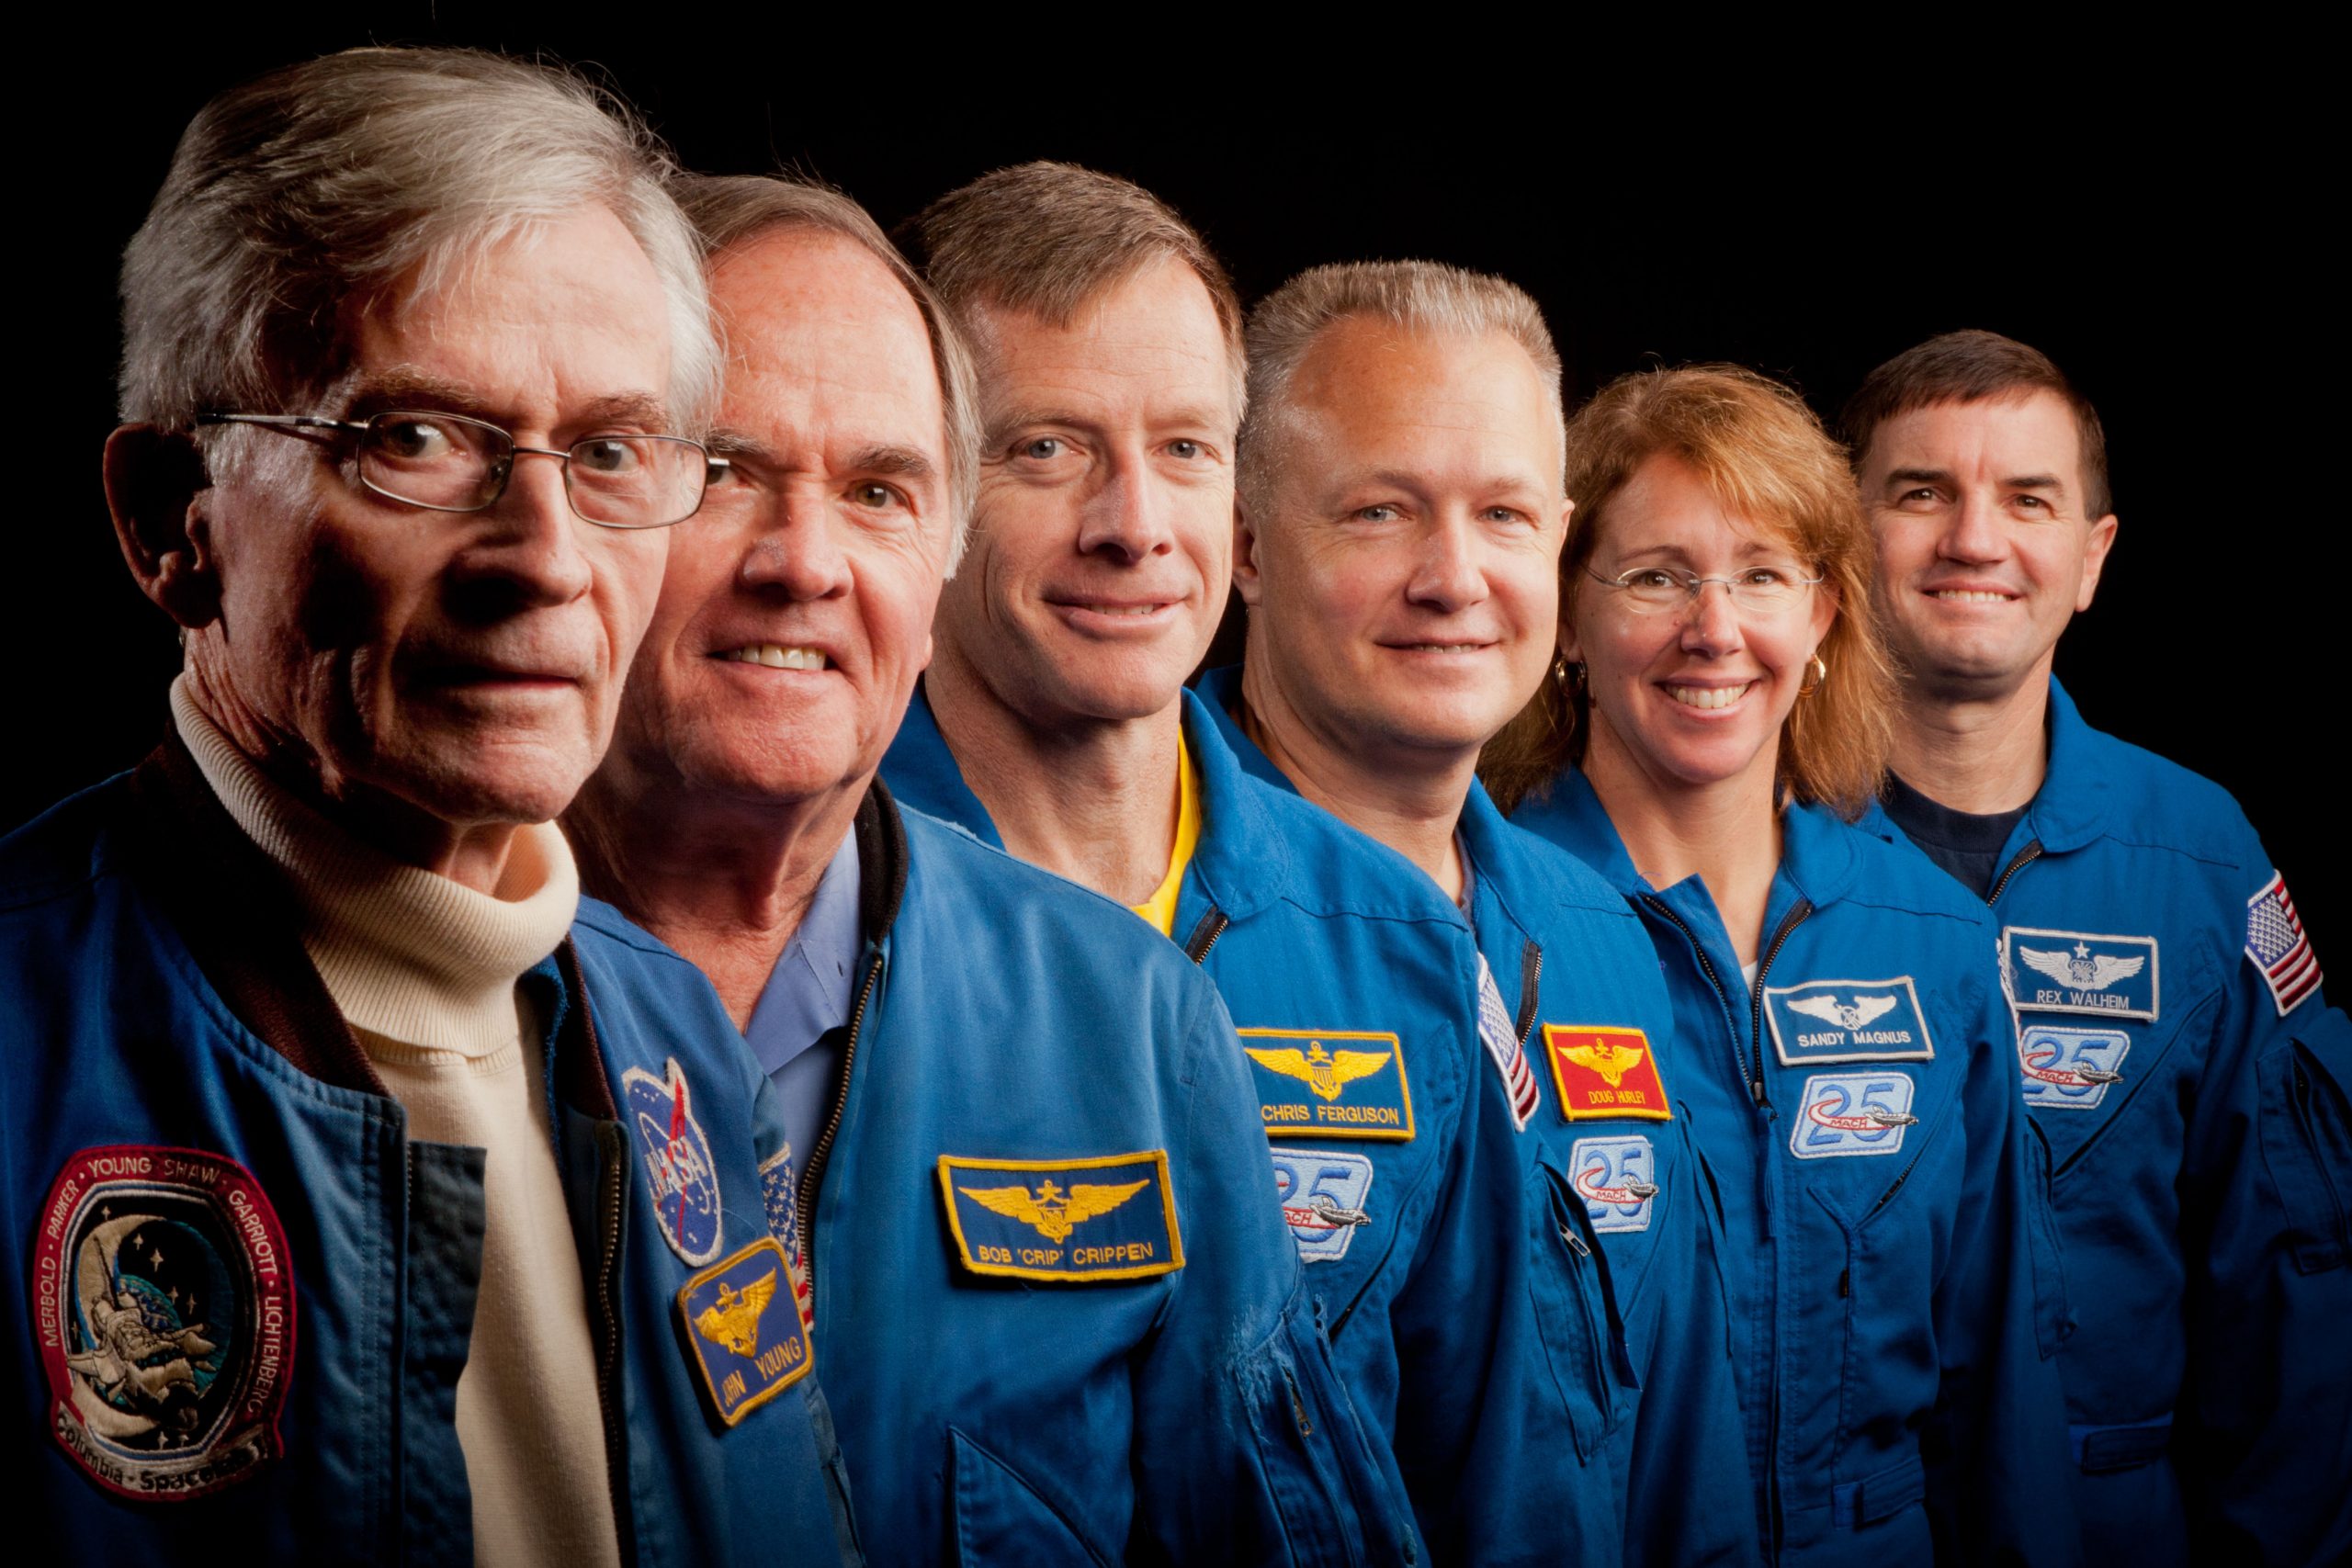 Gli astronauti della prima missione dello Shuttle e dell'ultima. Da sinistra: John Young e Robert Crippen di STS-1; Chris Ferguson; Doug Hurley; Sandy Magnus e Rex Walheim di STS-135. Credits: NASA Photo / Houston Chronicle, Smiley N. Pool )